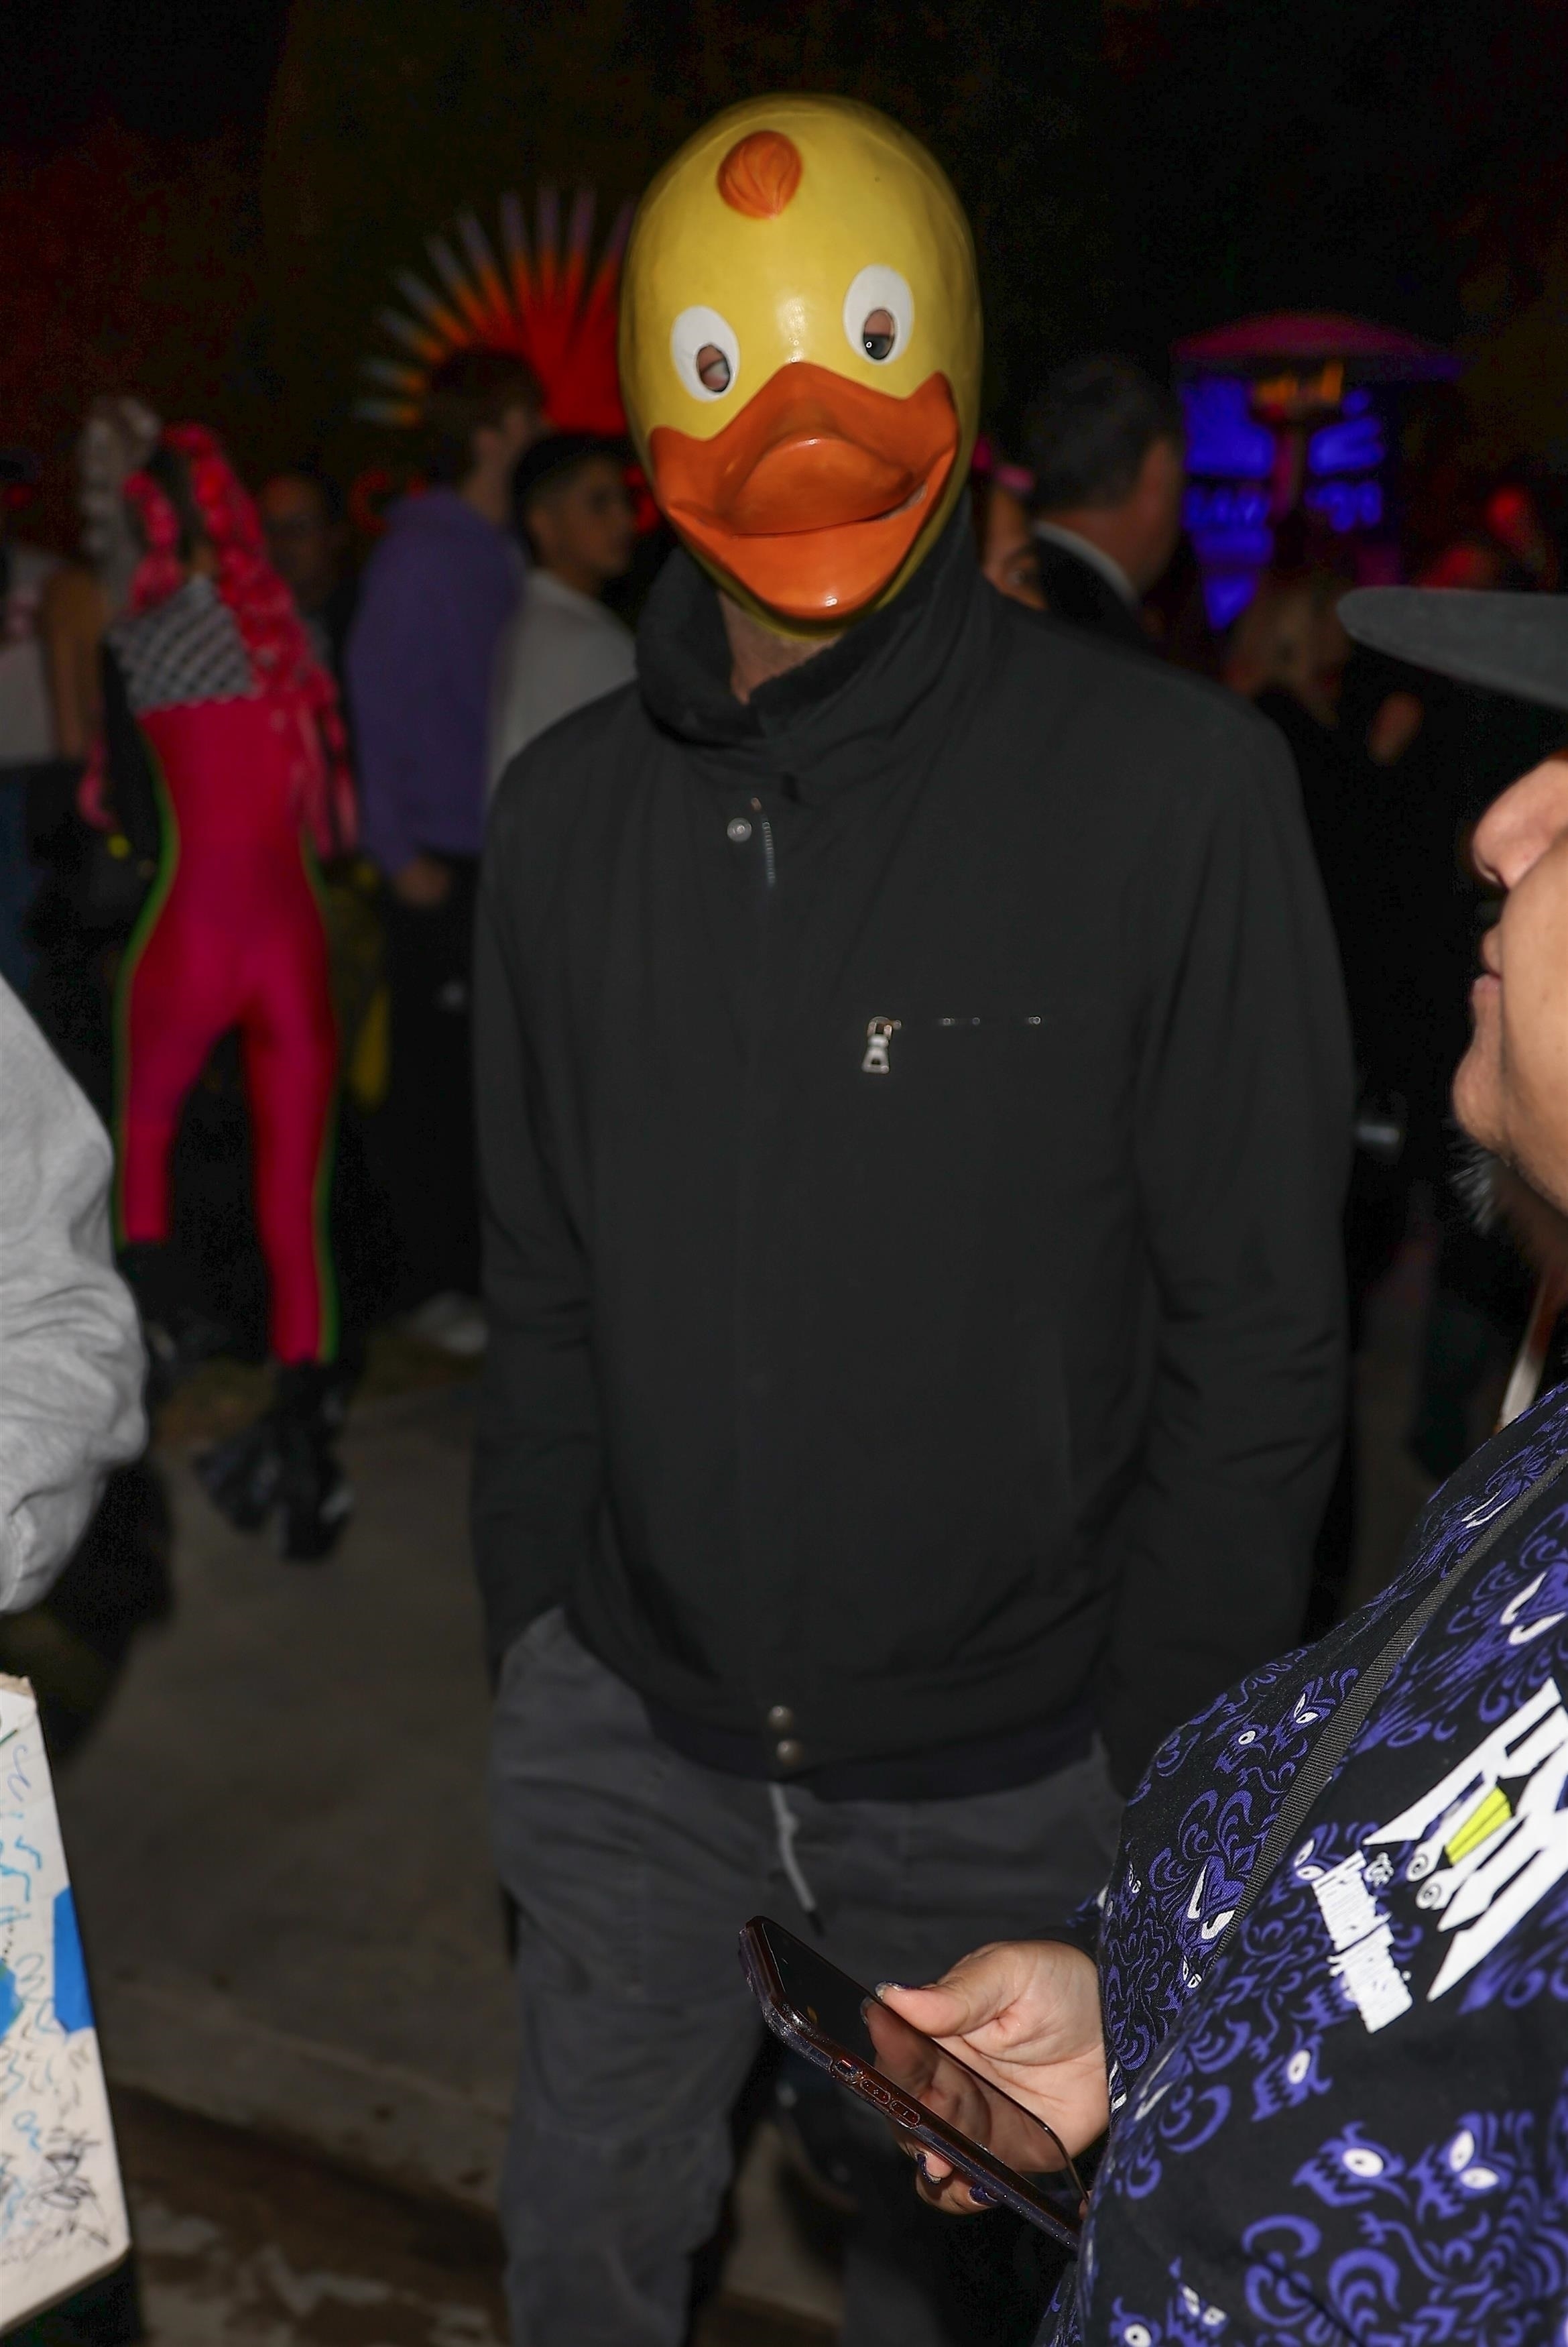 Closeup of Leonardo DiCaprio as a duck inside a party